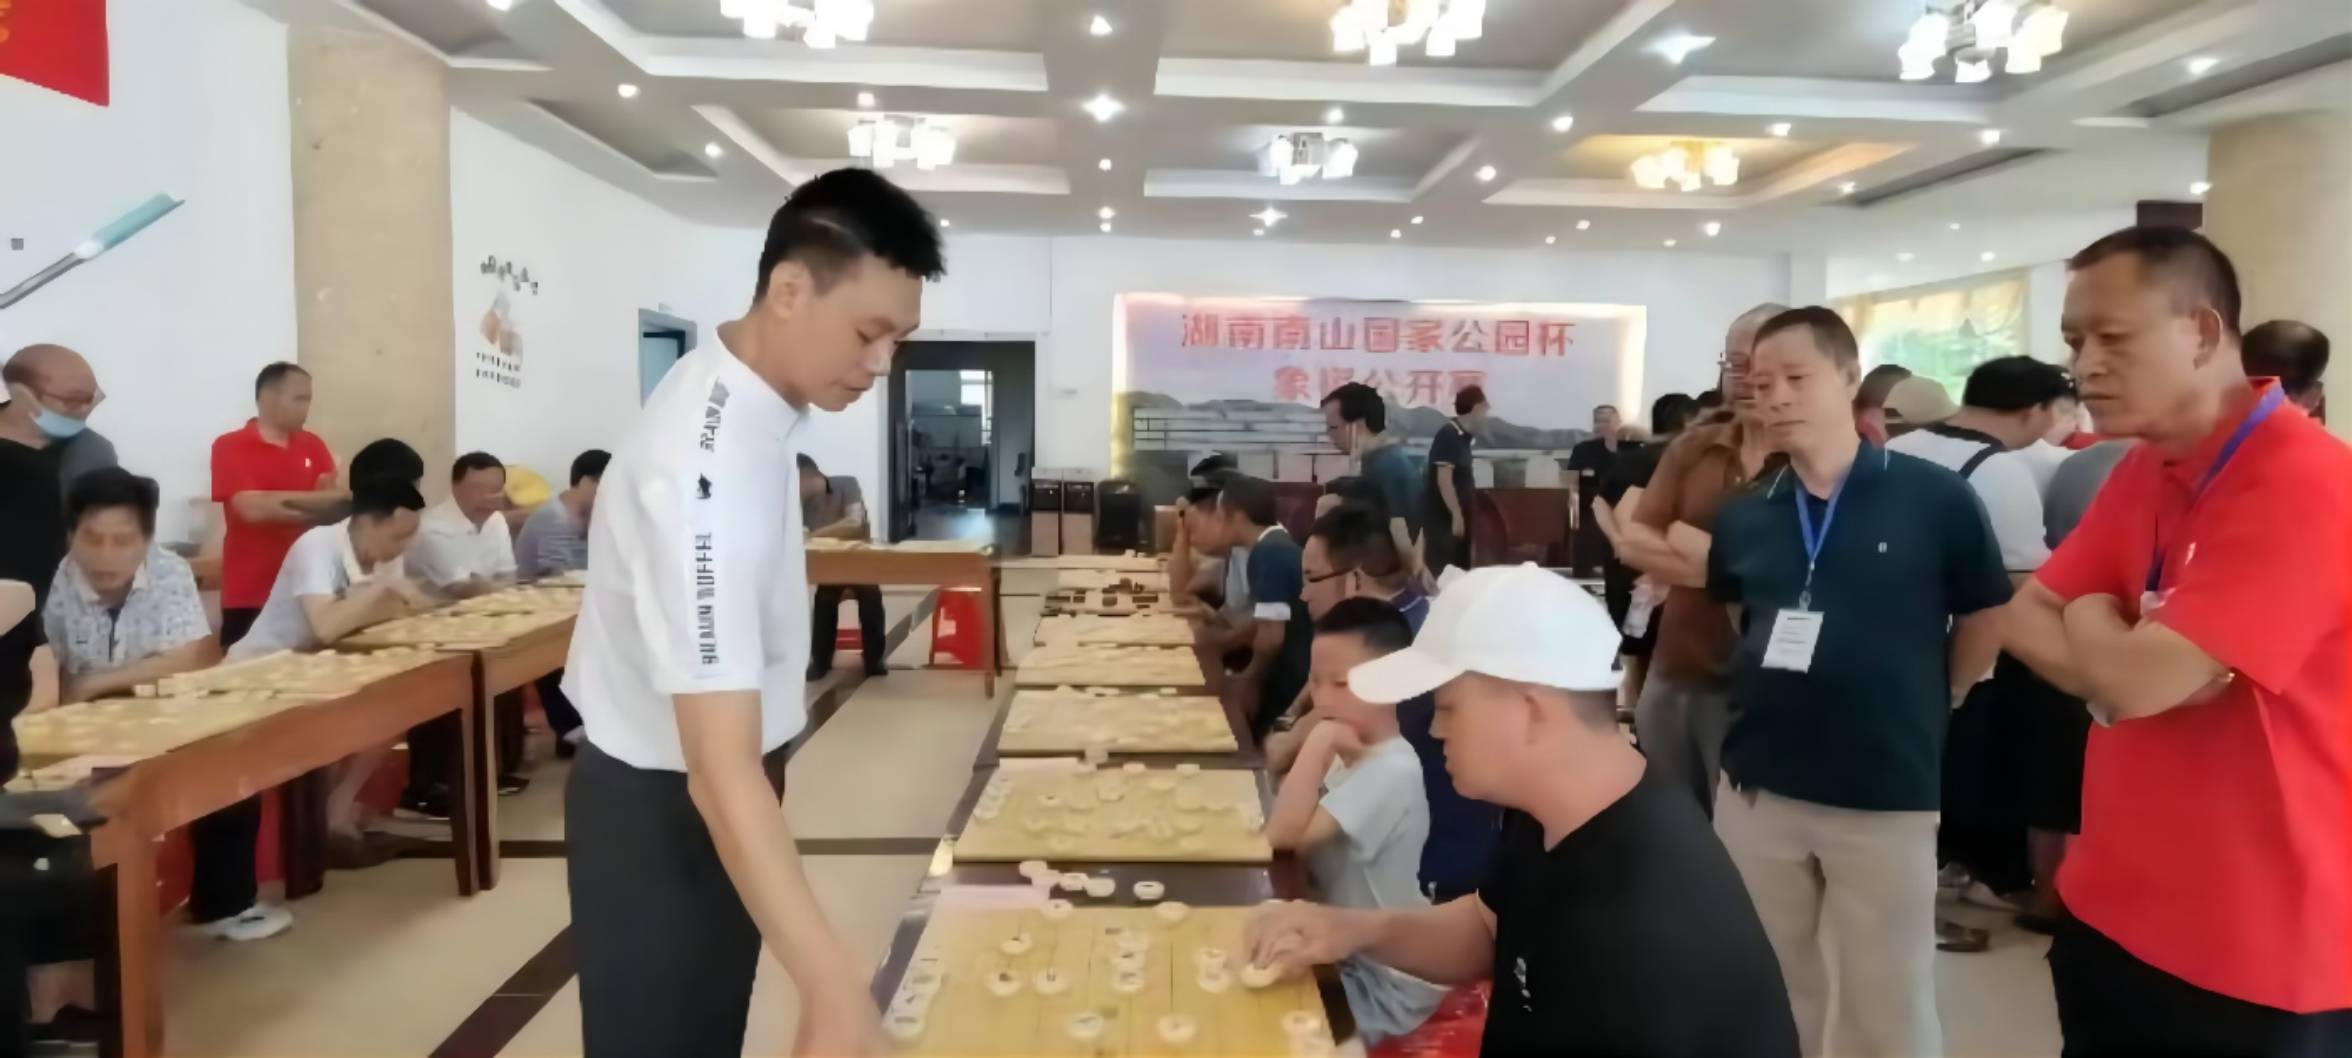 中国象棋特级大师许银川(白衣服站立者）与棋手进行车轮战。阳望春摄